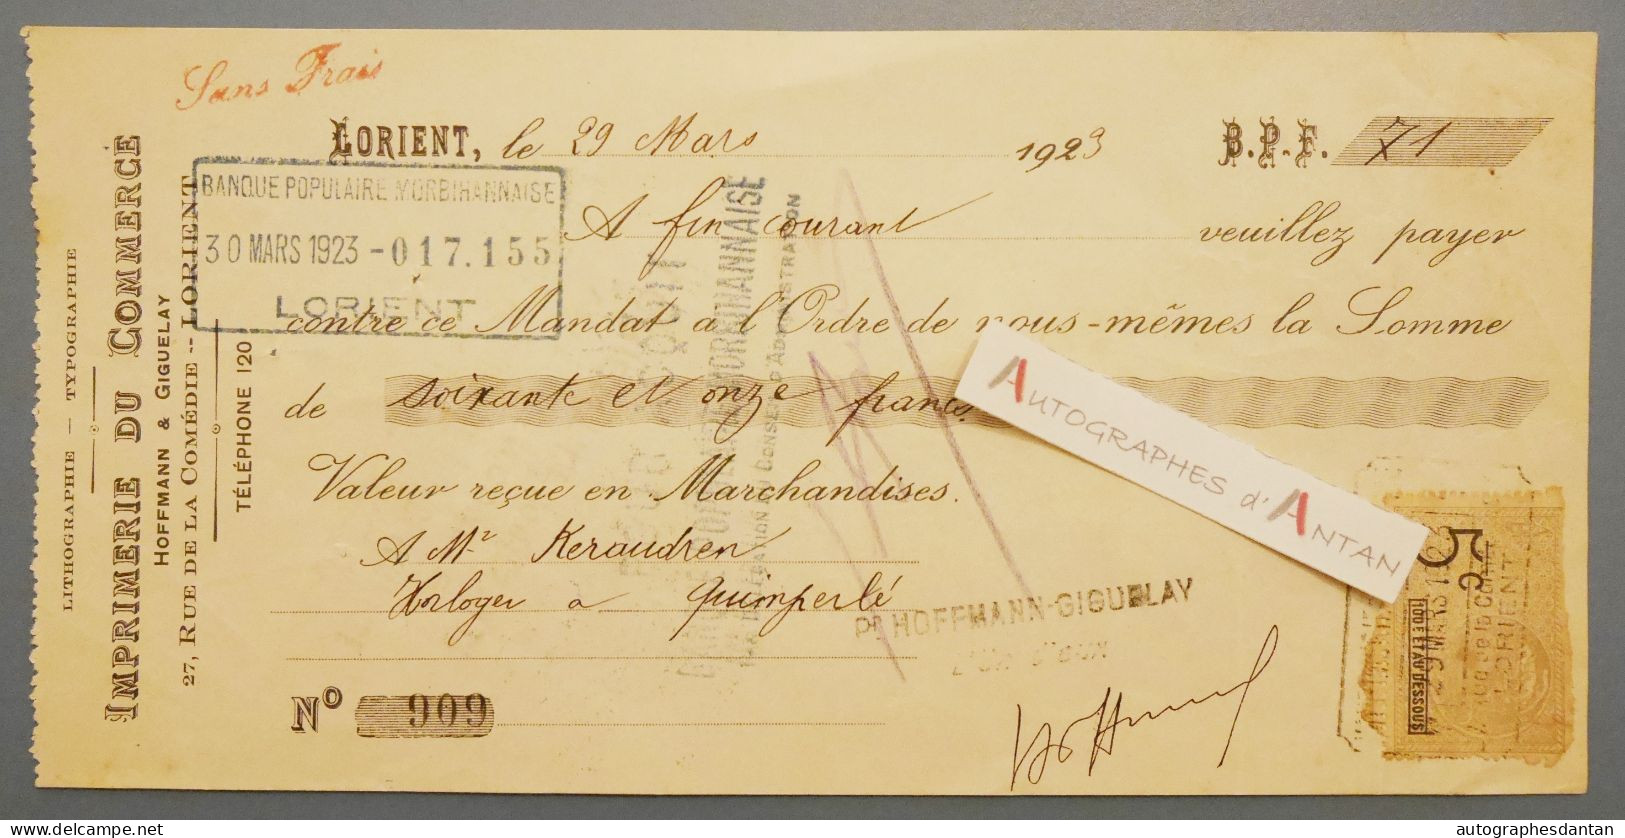 ● Lorient 1923 Imprimerie Du Commerce à M Keraudren Horloger à Quimperlé - Mandat Lettre De Change - Wechsel